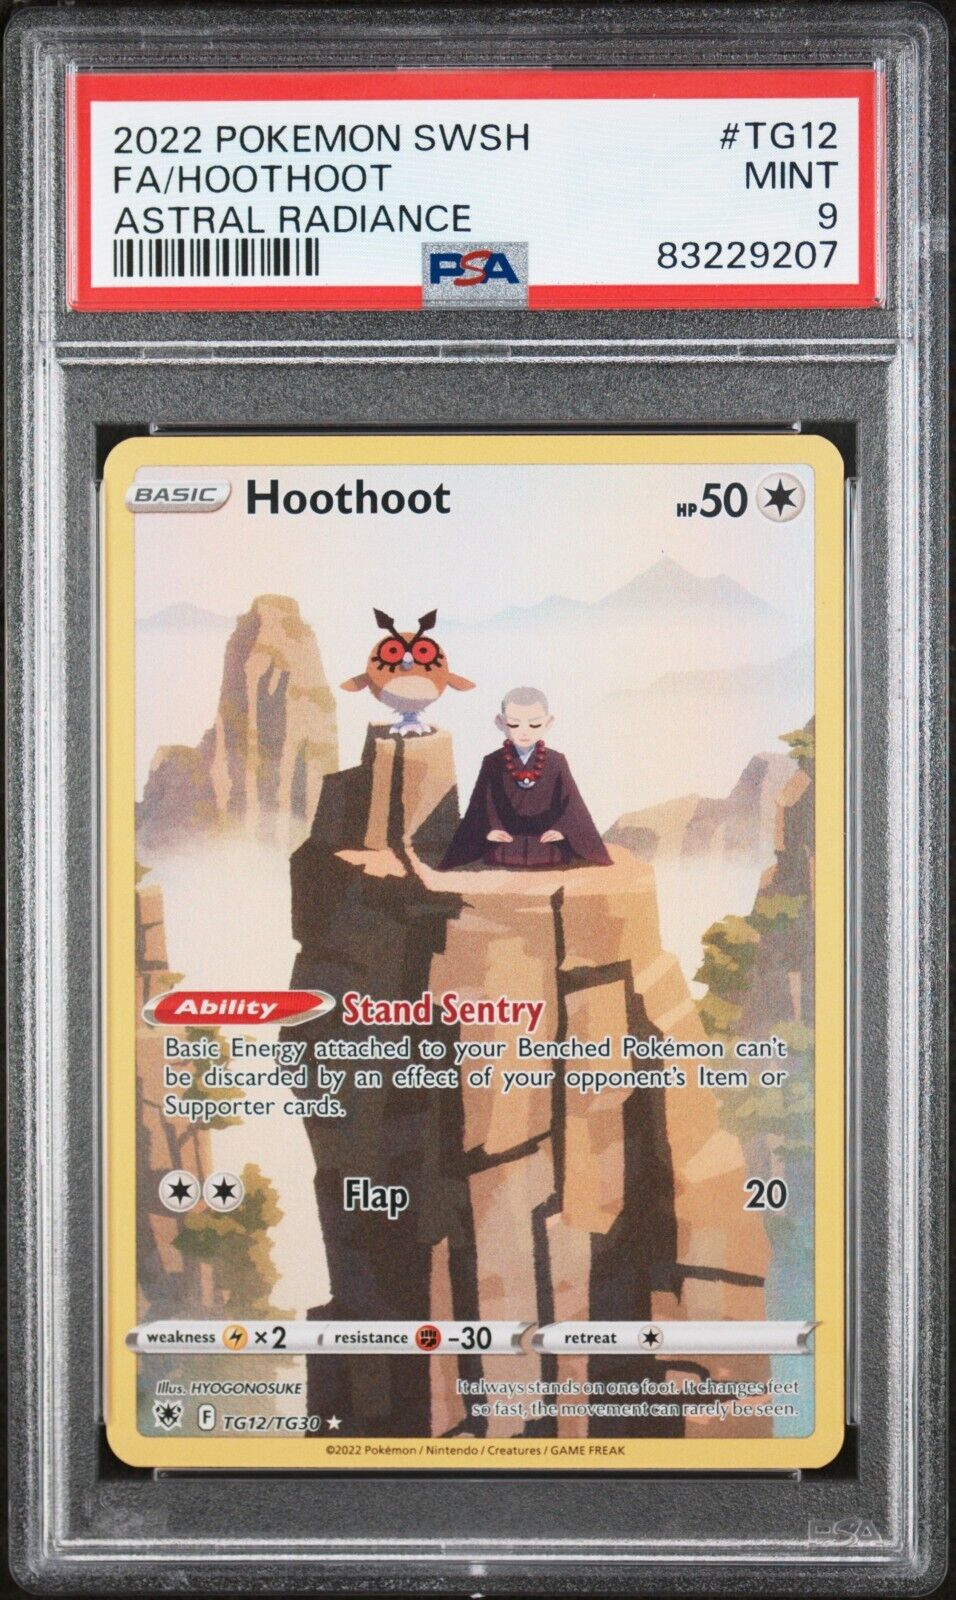 PSA 9 MINT Hoothoot TG12 - Astral Radiance 2022 - Pokémon